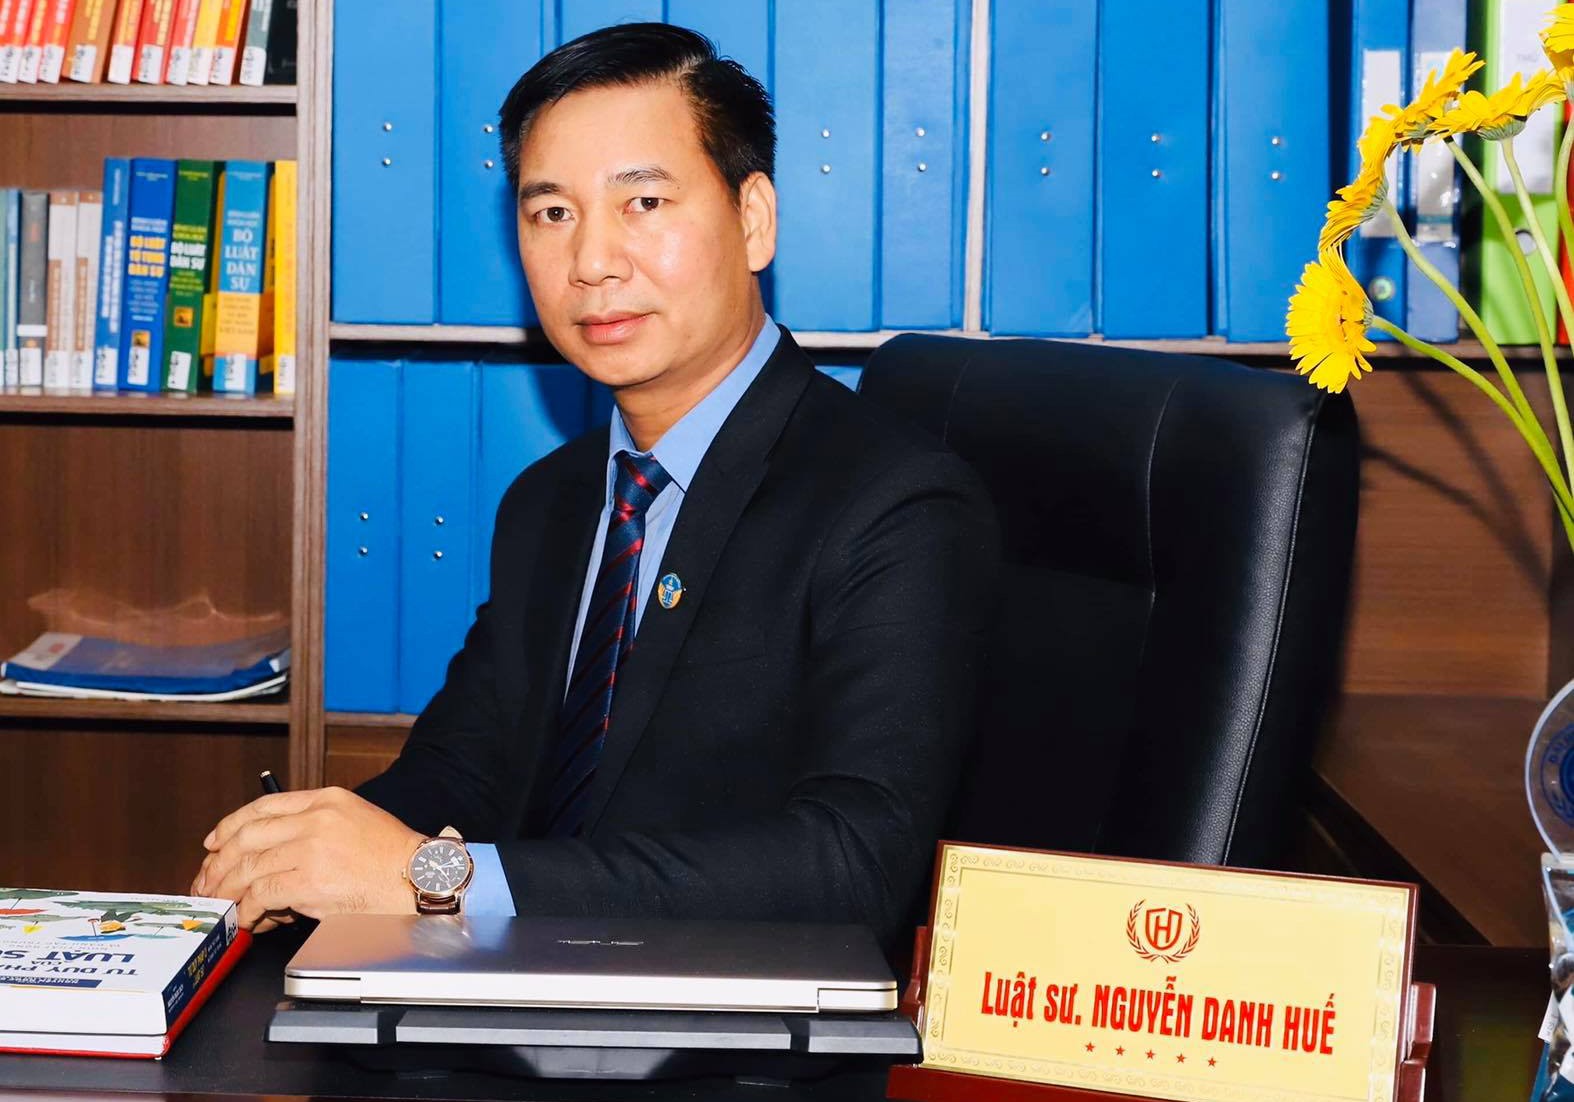  Luật sư Nguyễn Danh Huế - Chủ tịch Hội đồng thành viên Công ty Luật Hừng Đông.